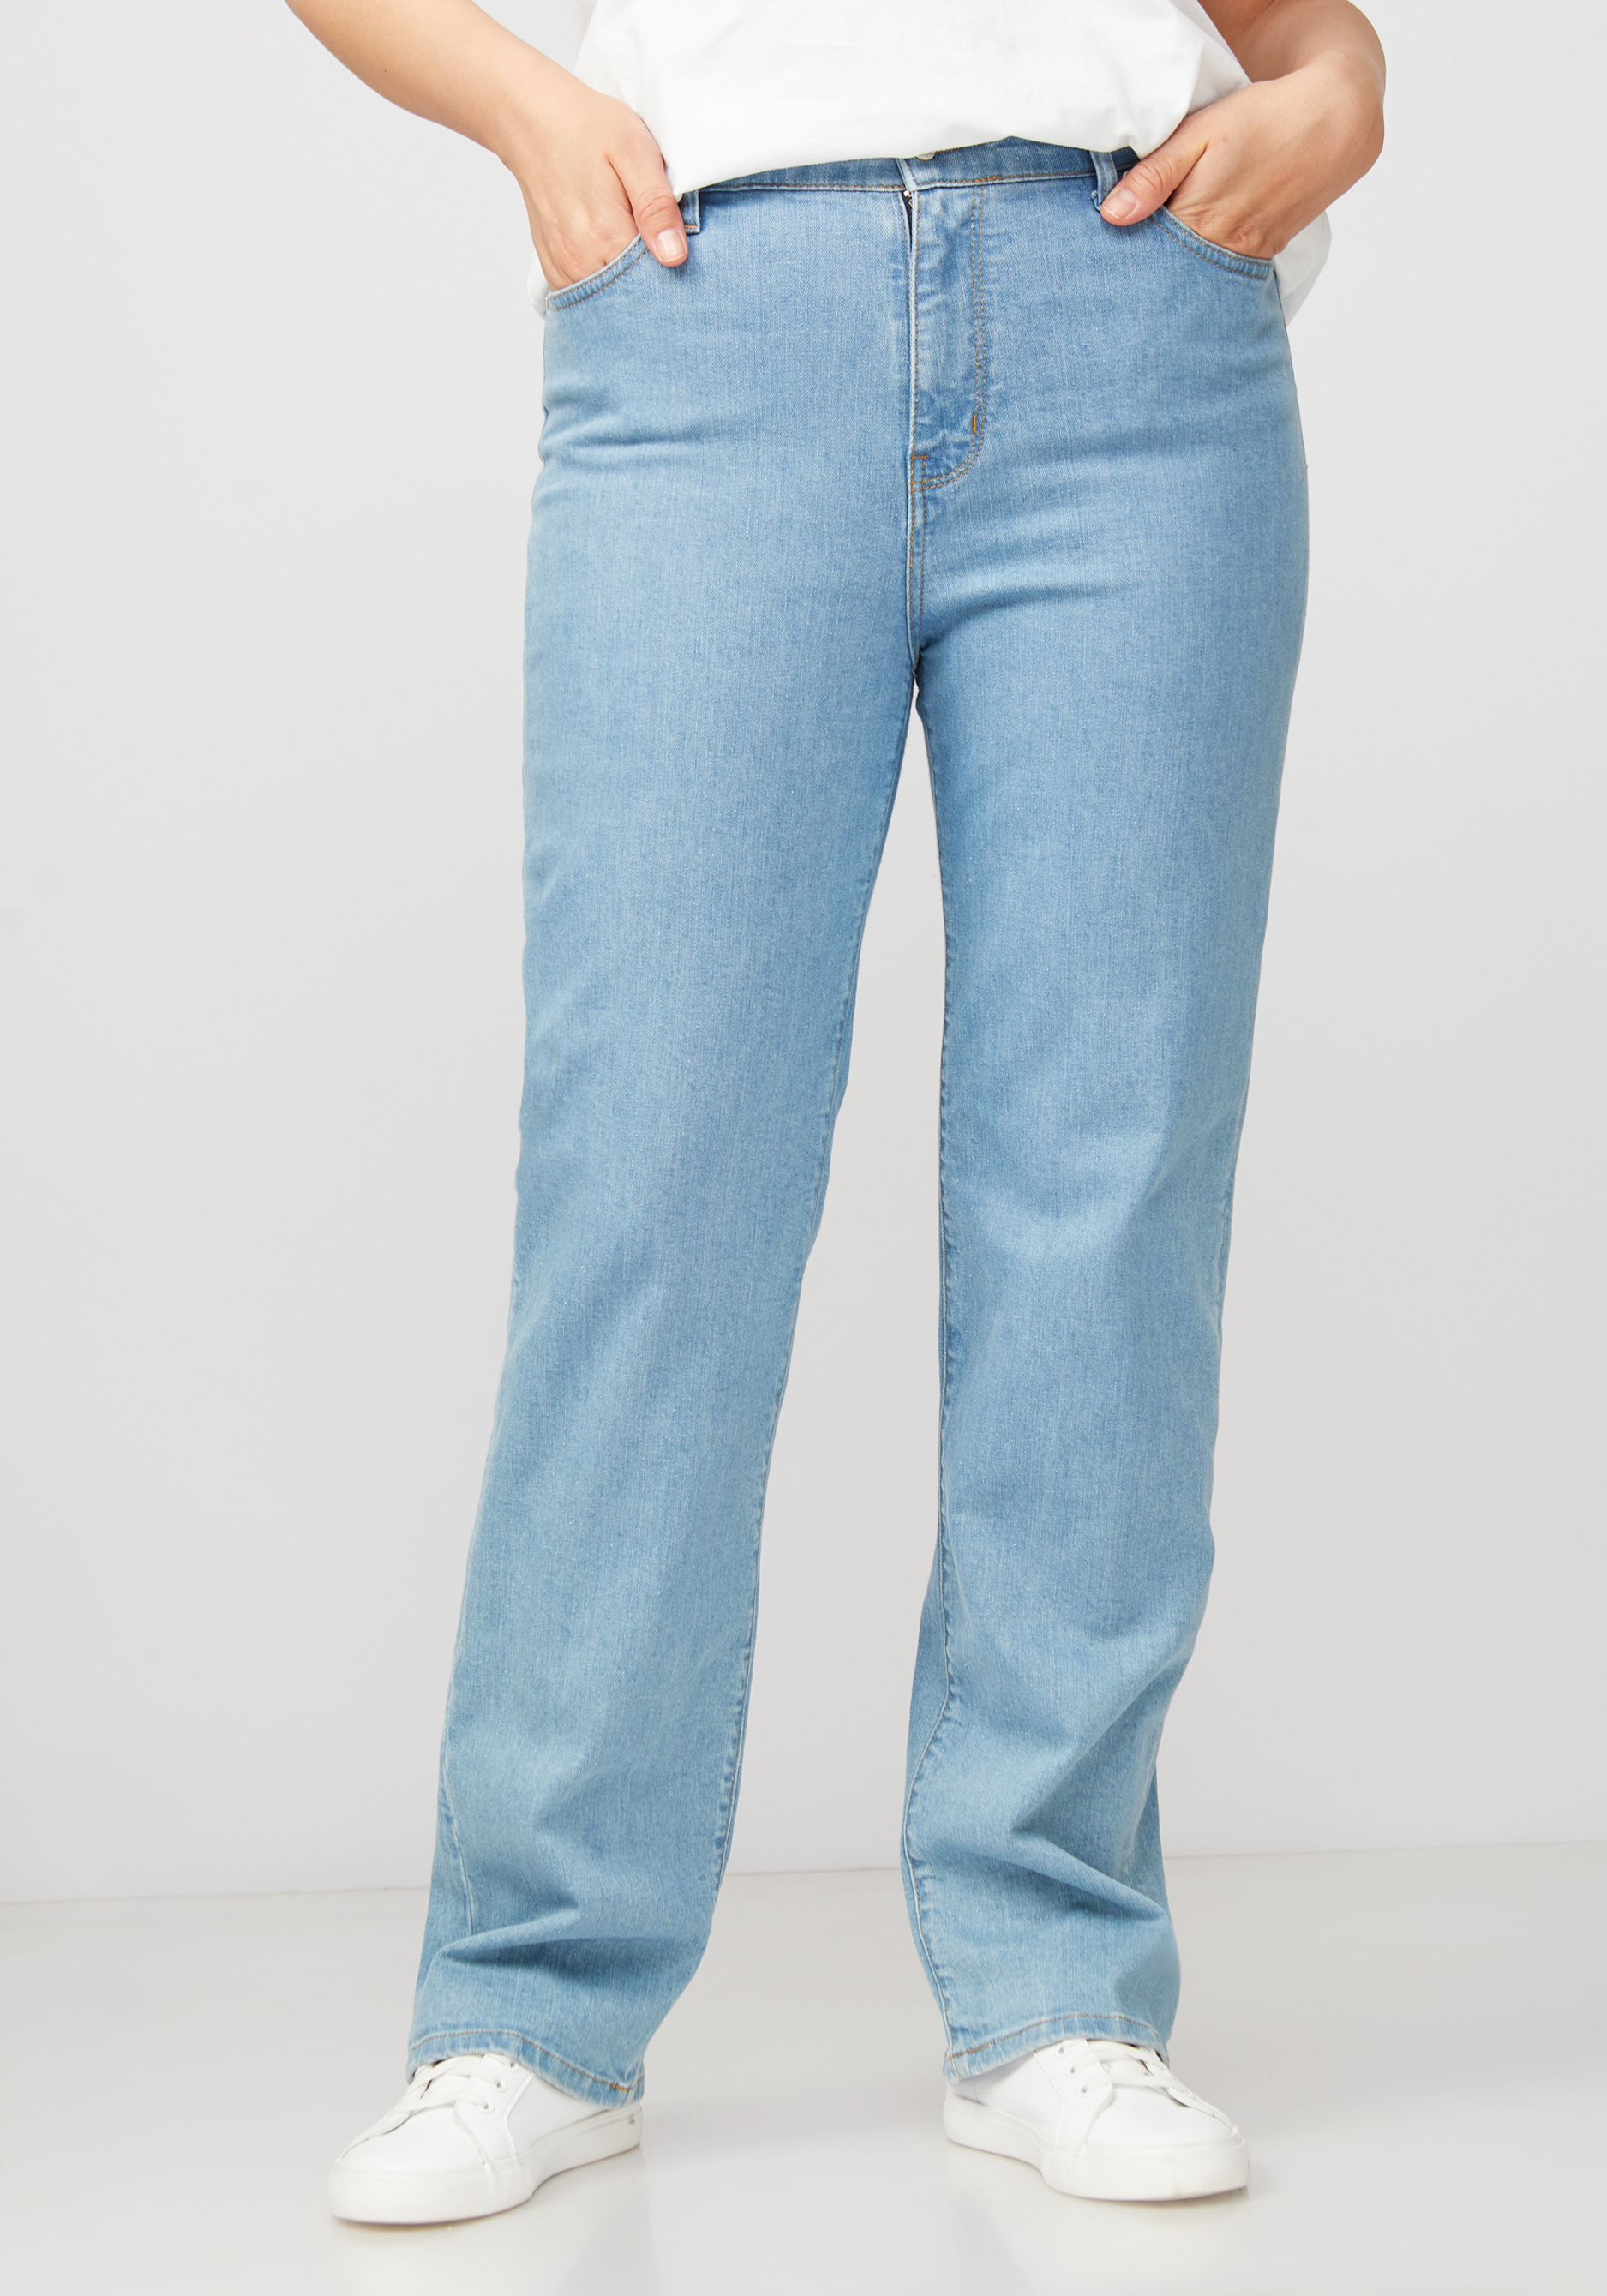 Джинсы с принтом на кармане жен джинсы арт 12 0155 голубой р 26